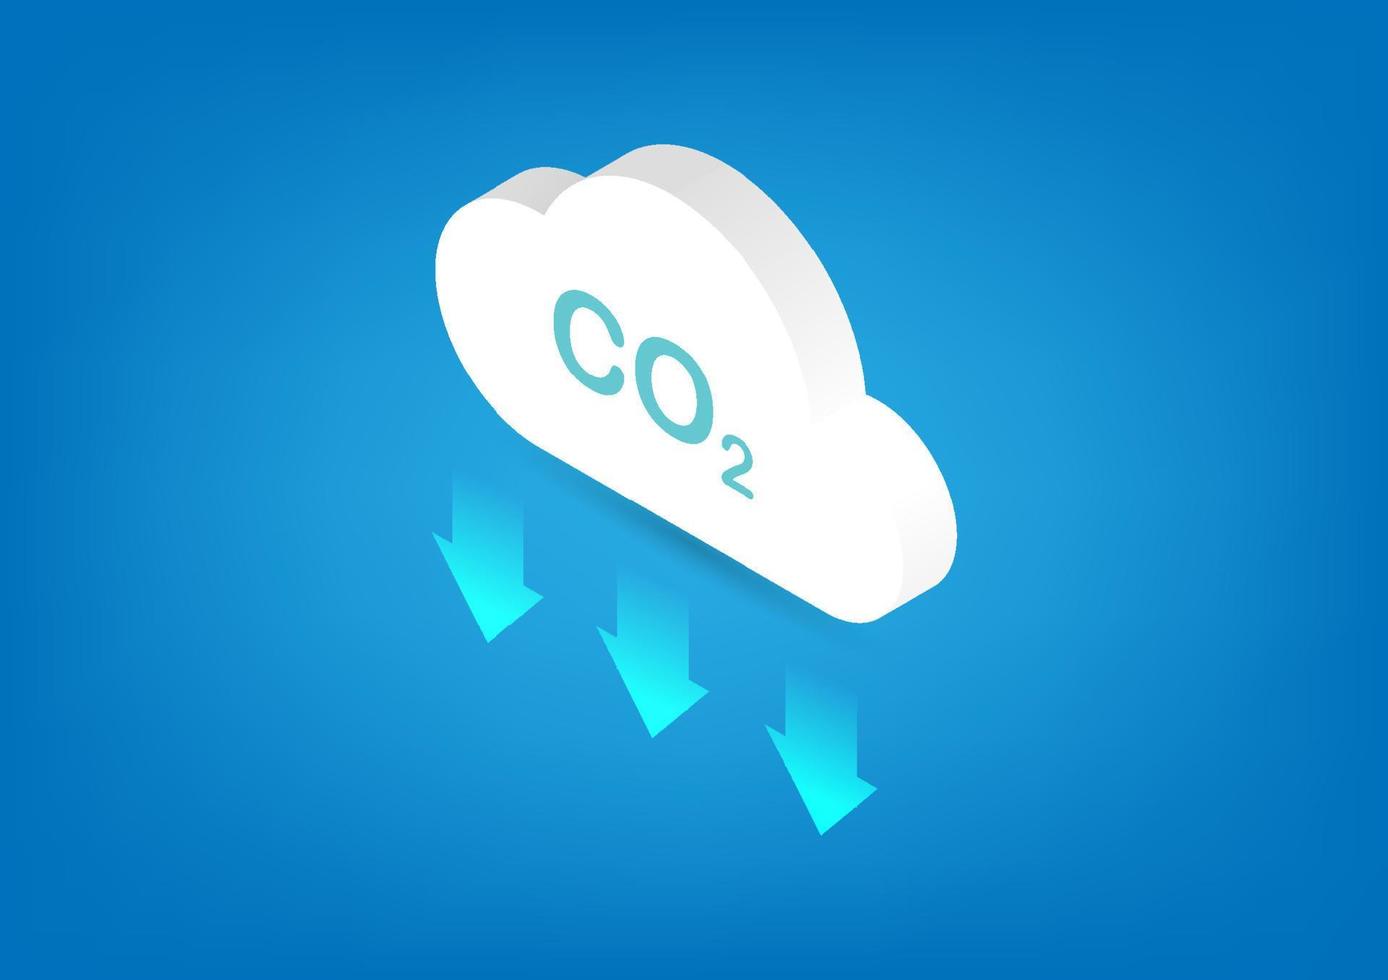 CO2 neutro. concepto de cero emisiones netas. reducción de las emisiones de dióxido de carbono. ilustración de nube isométrica. vector